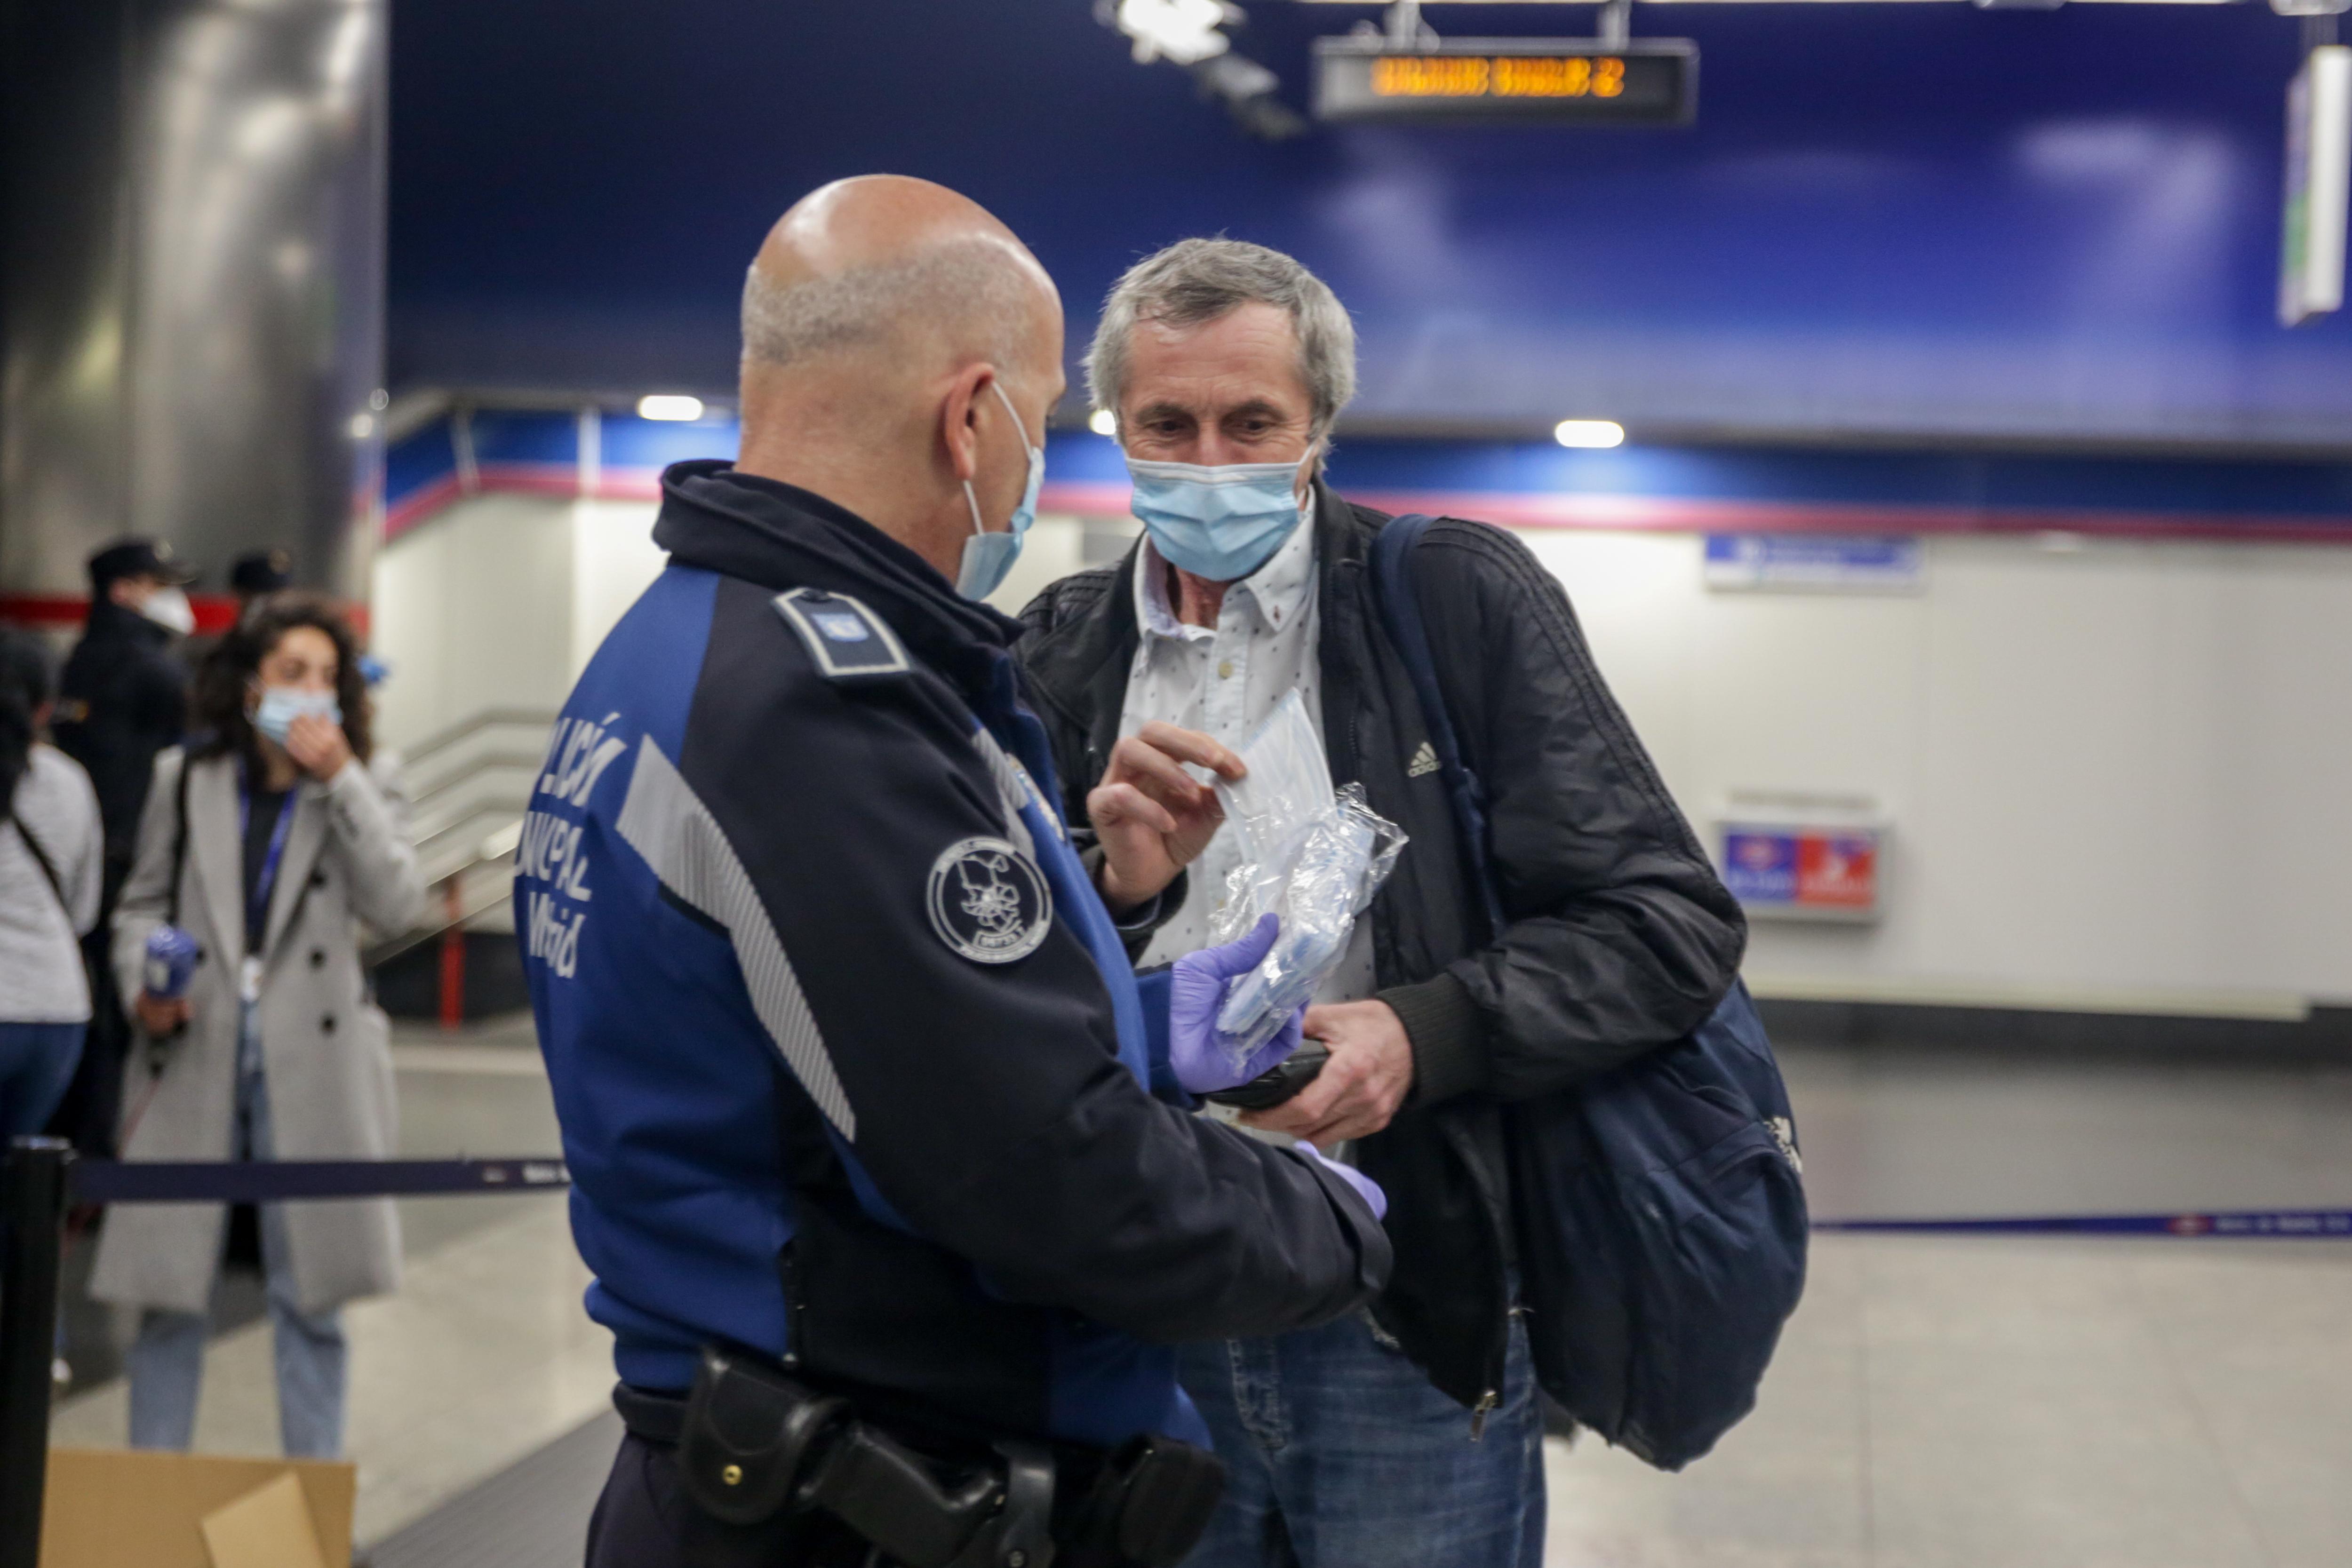 La policía nacional entrega mascarillas en el Metro de Madrid / EuropaPress